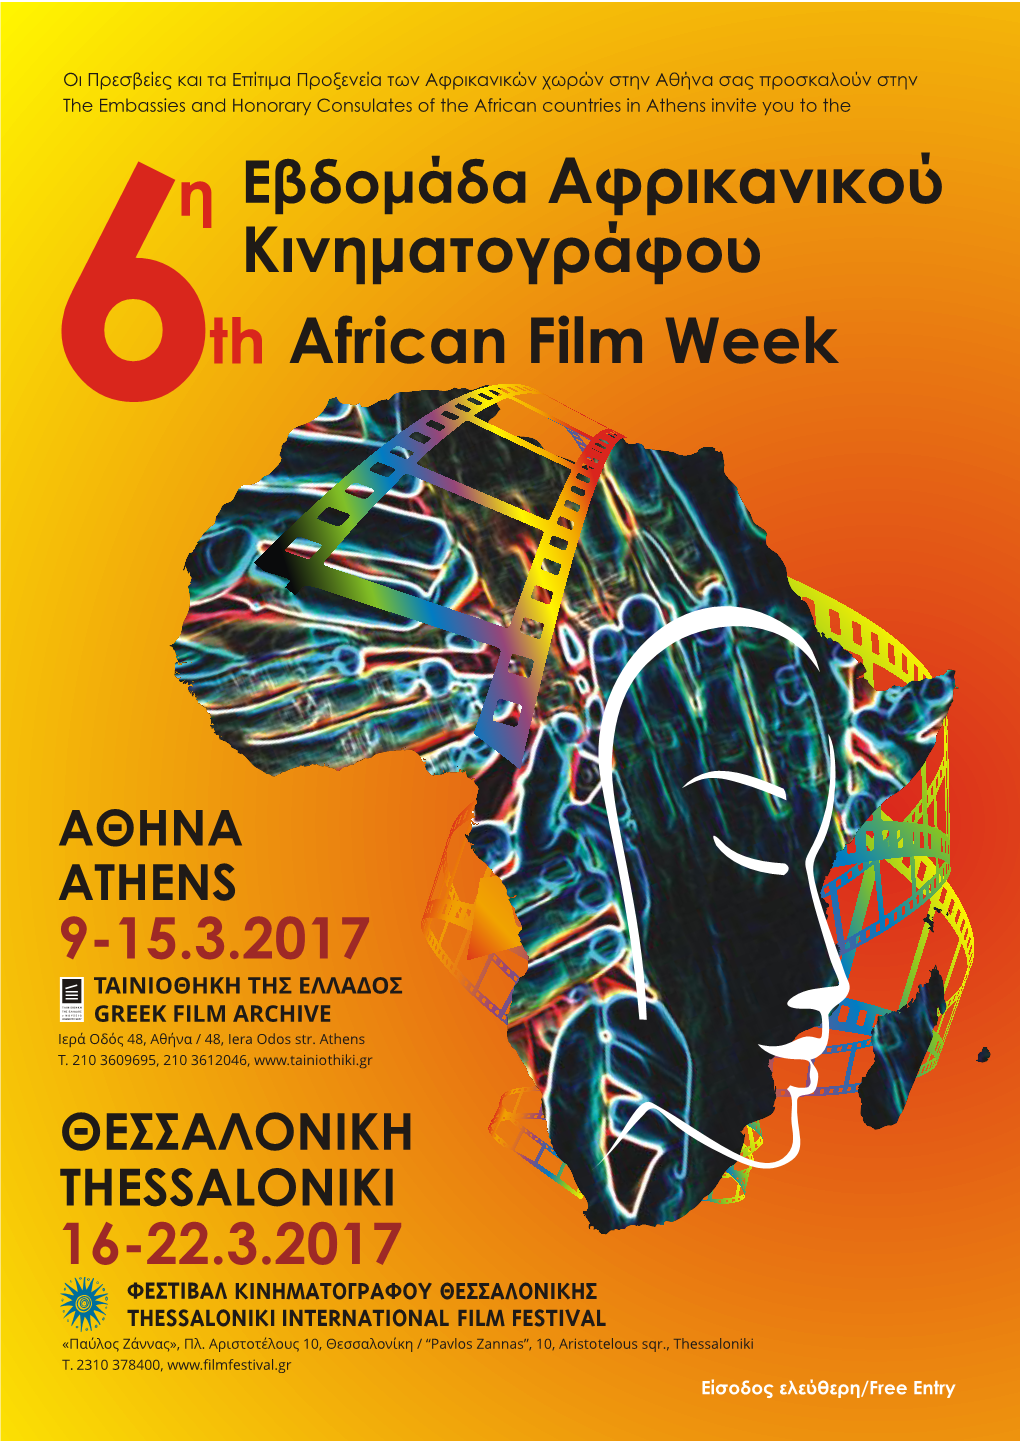 Кινημаτογράφου Εβδομάδа Aφρικаνικού African Film Week Th 6Η